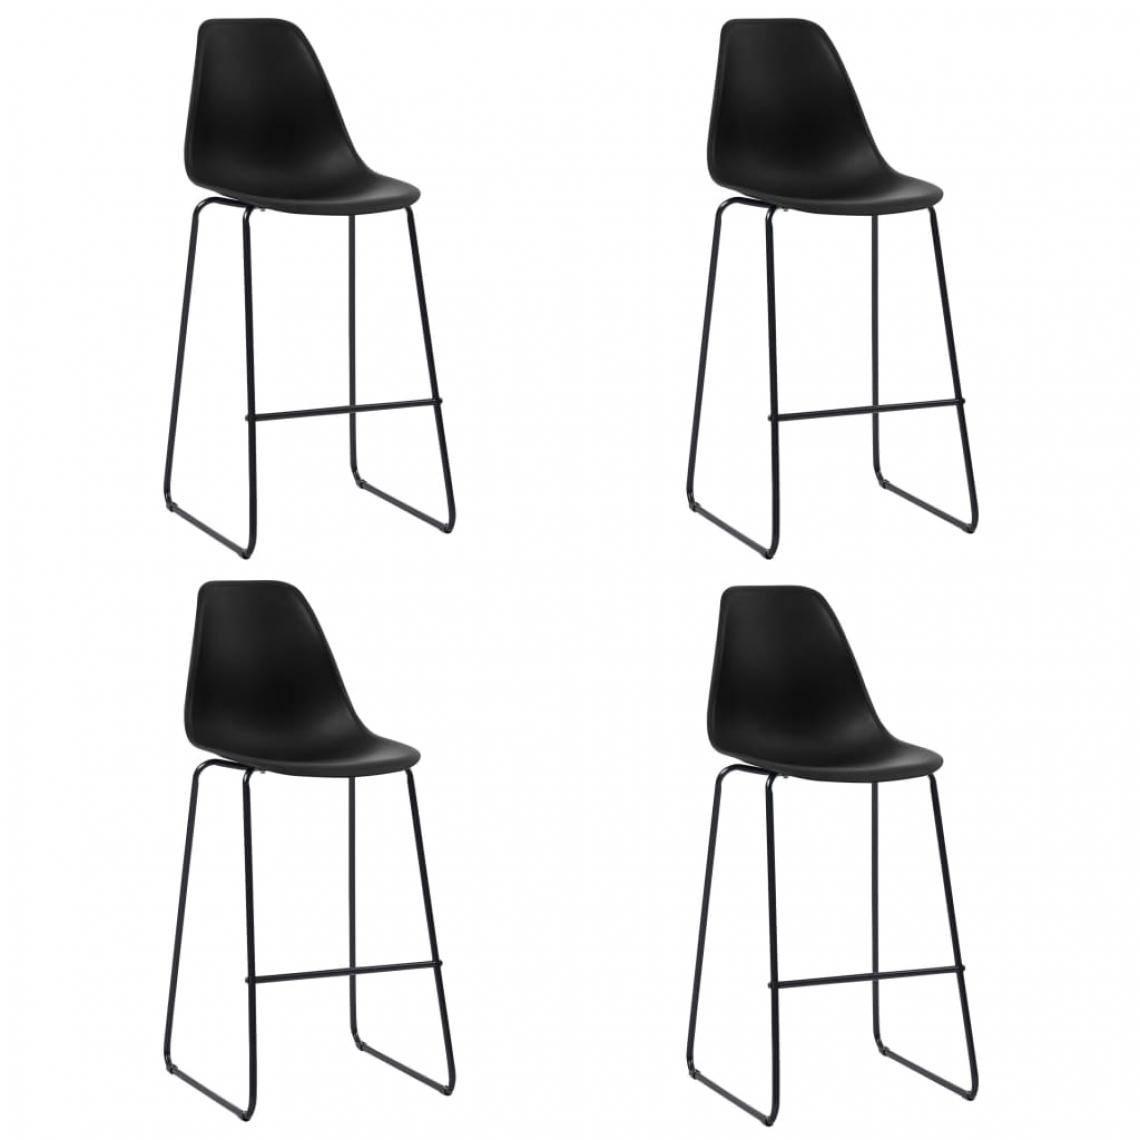 Icaverne - Joli Fauteuils et chaises selection Paris Chaises de bar 4 pcs Noir Plastique - Tabourets